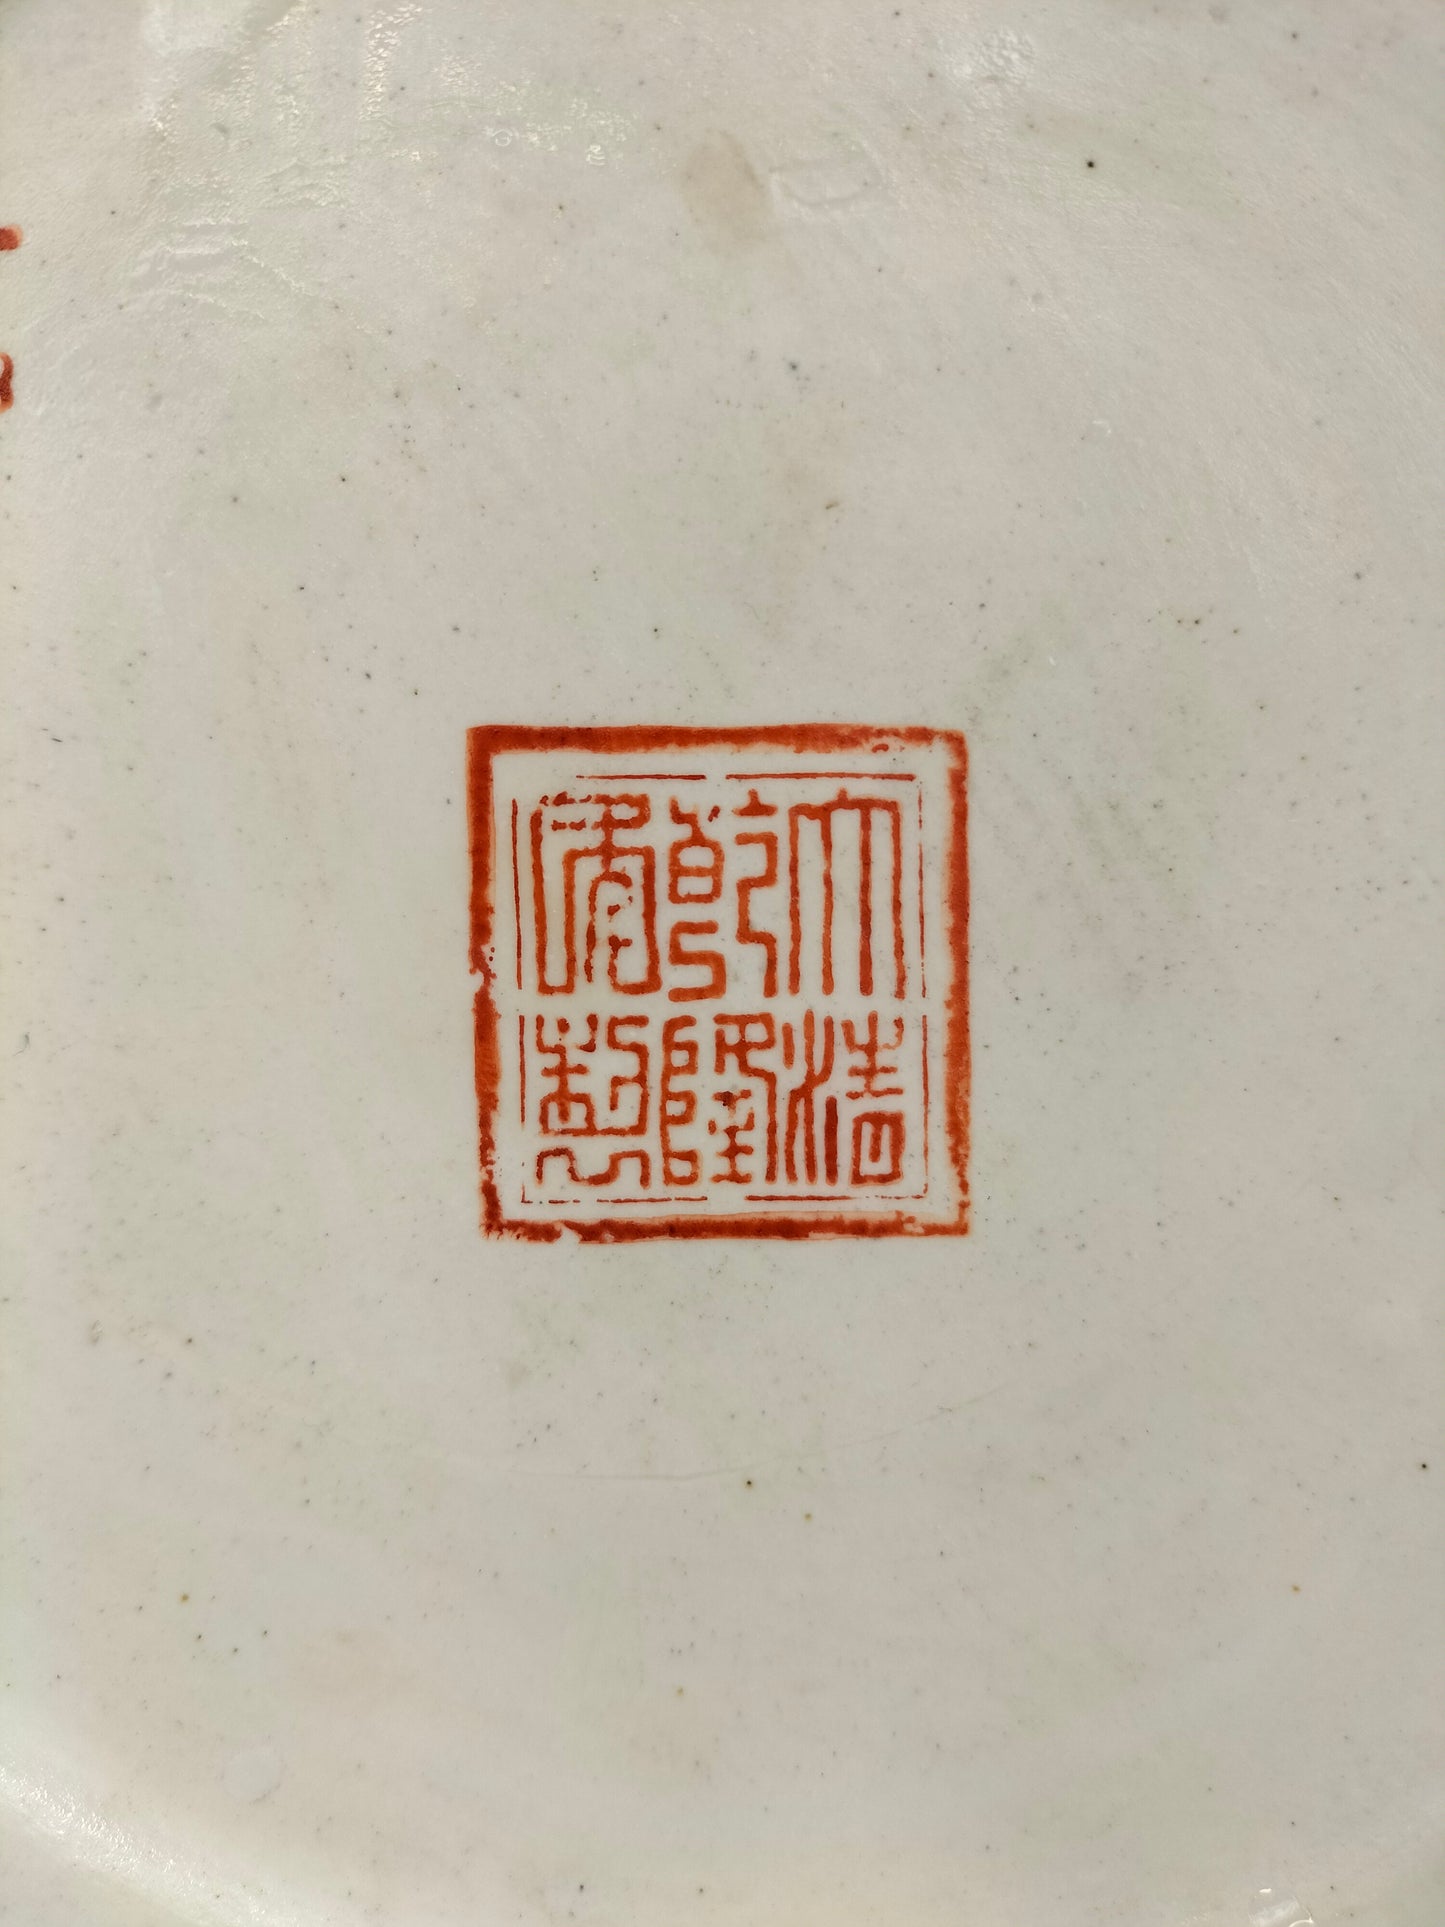 Vaso de cabaça dupla com medalhão de rosa de cantão chinês XL grande // Meados do século XX